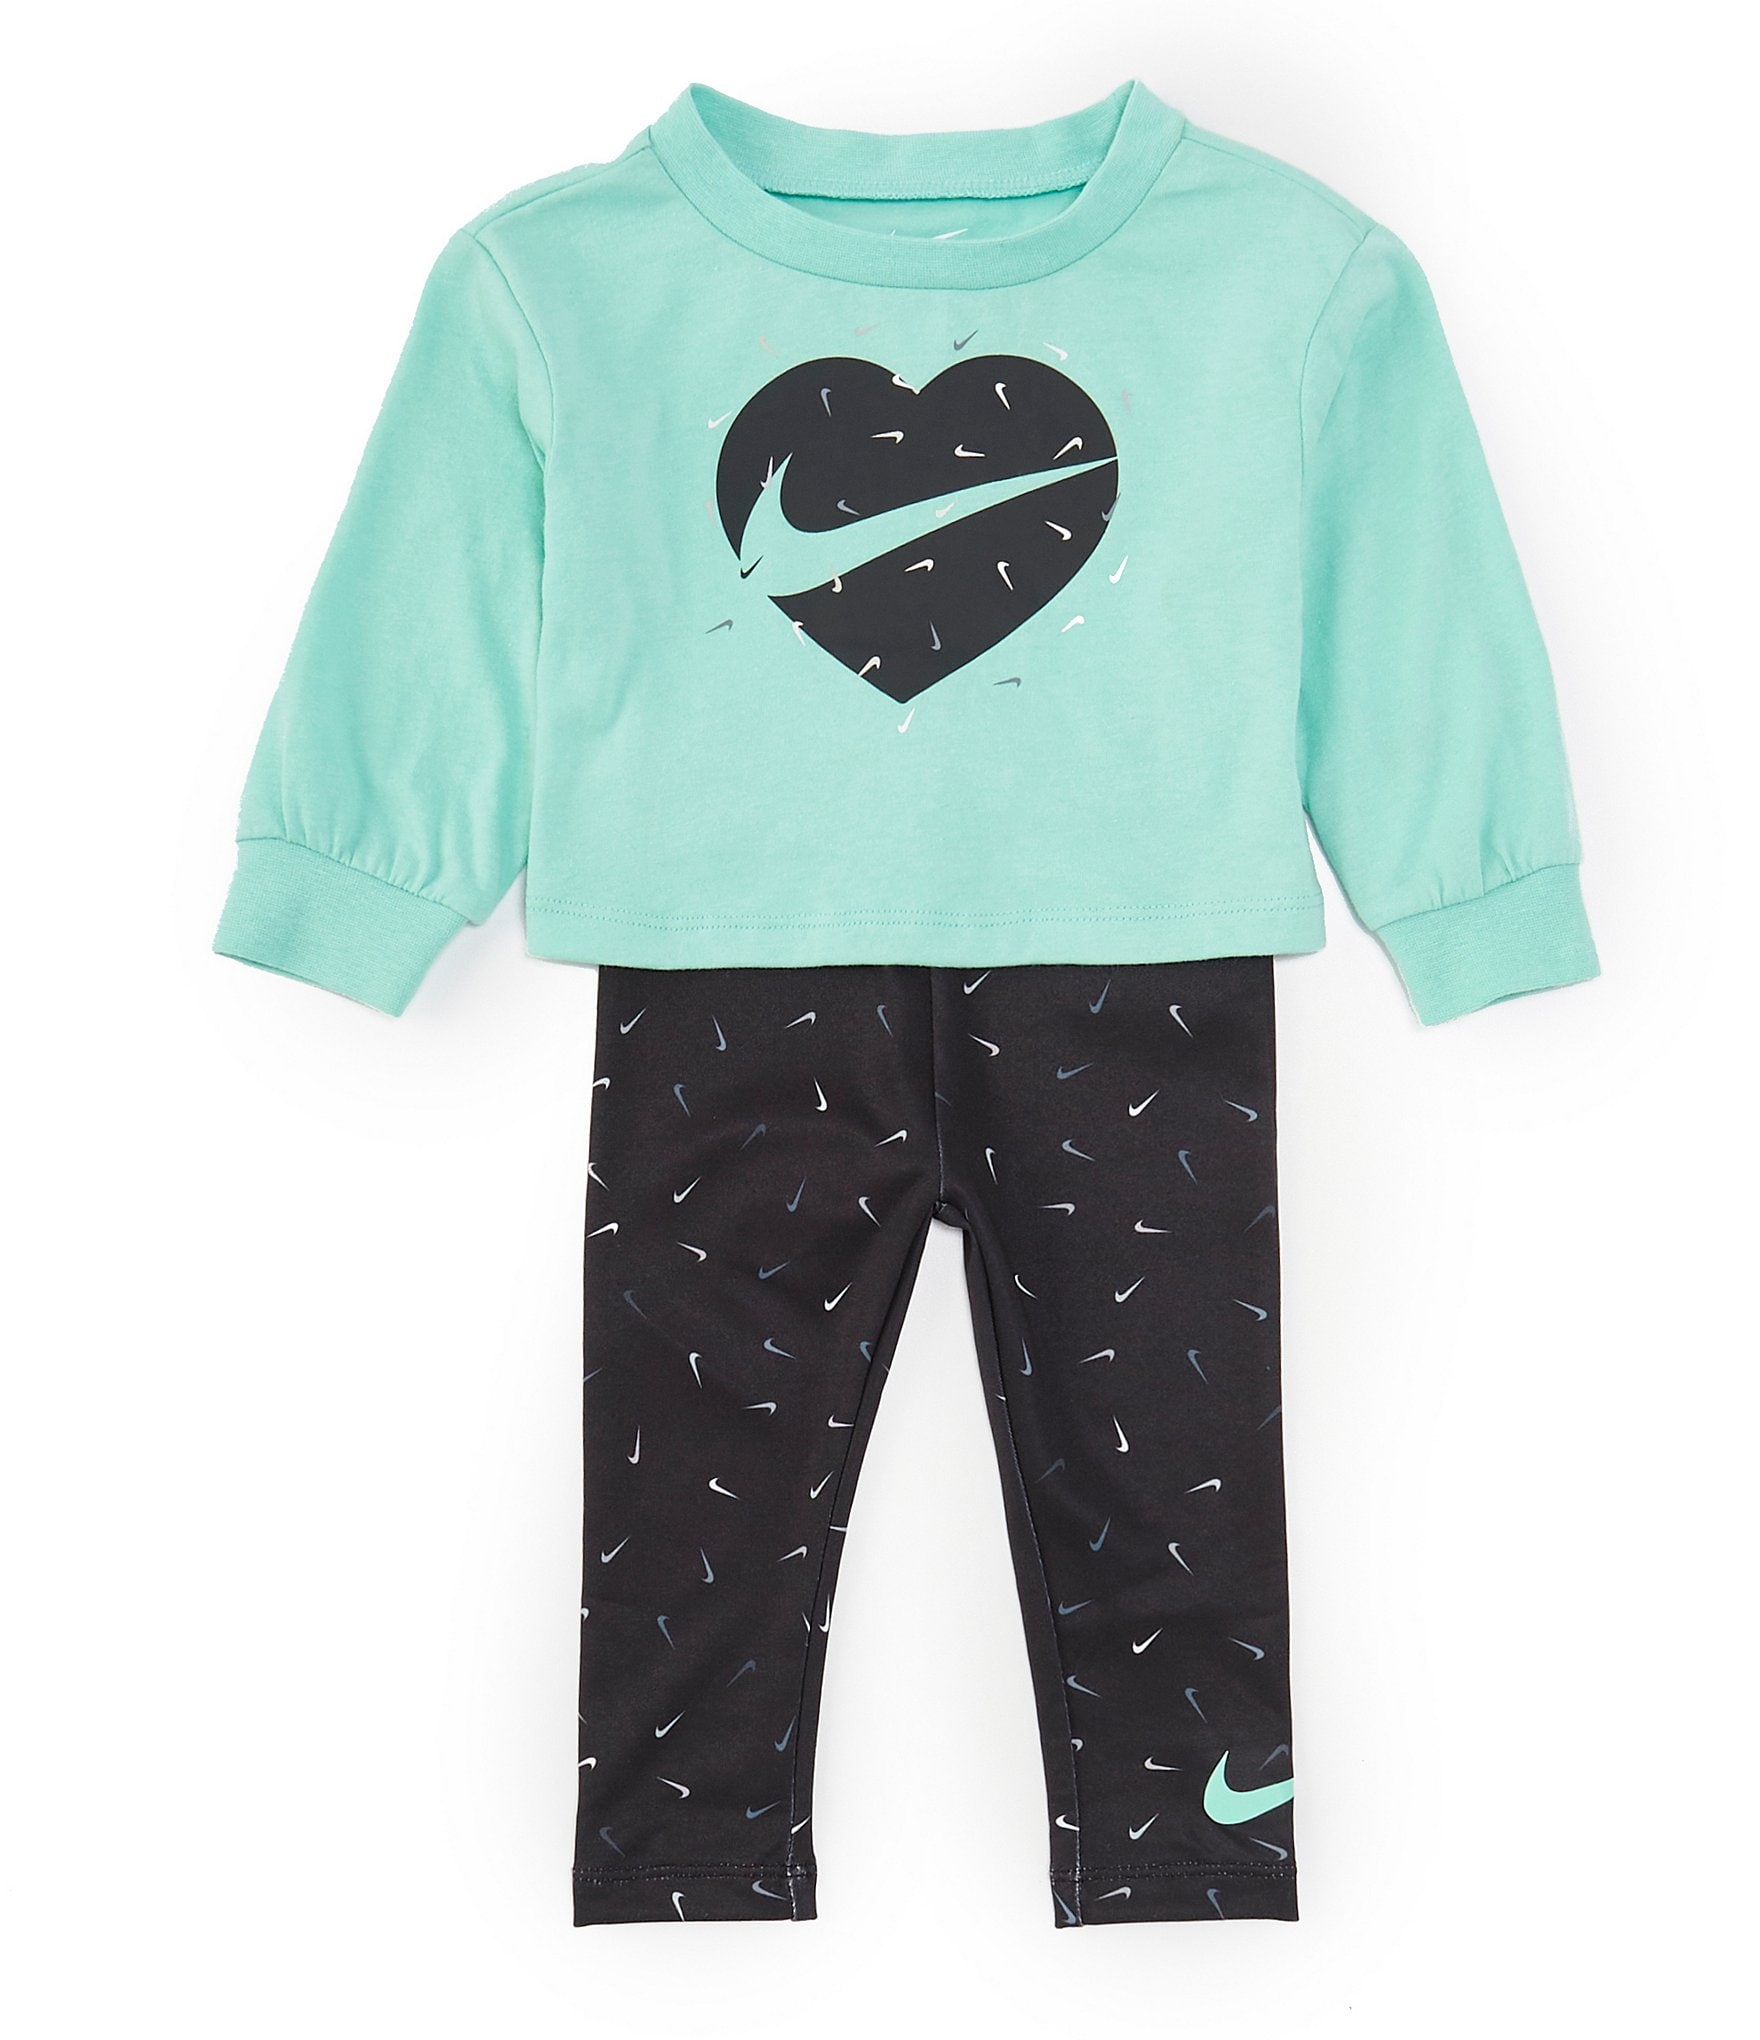 Girls Nike Nike High Waisted Leggings - Girls' Grade School Black/White  Size L - Yahoo Shopping